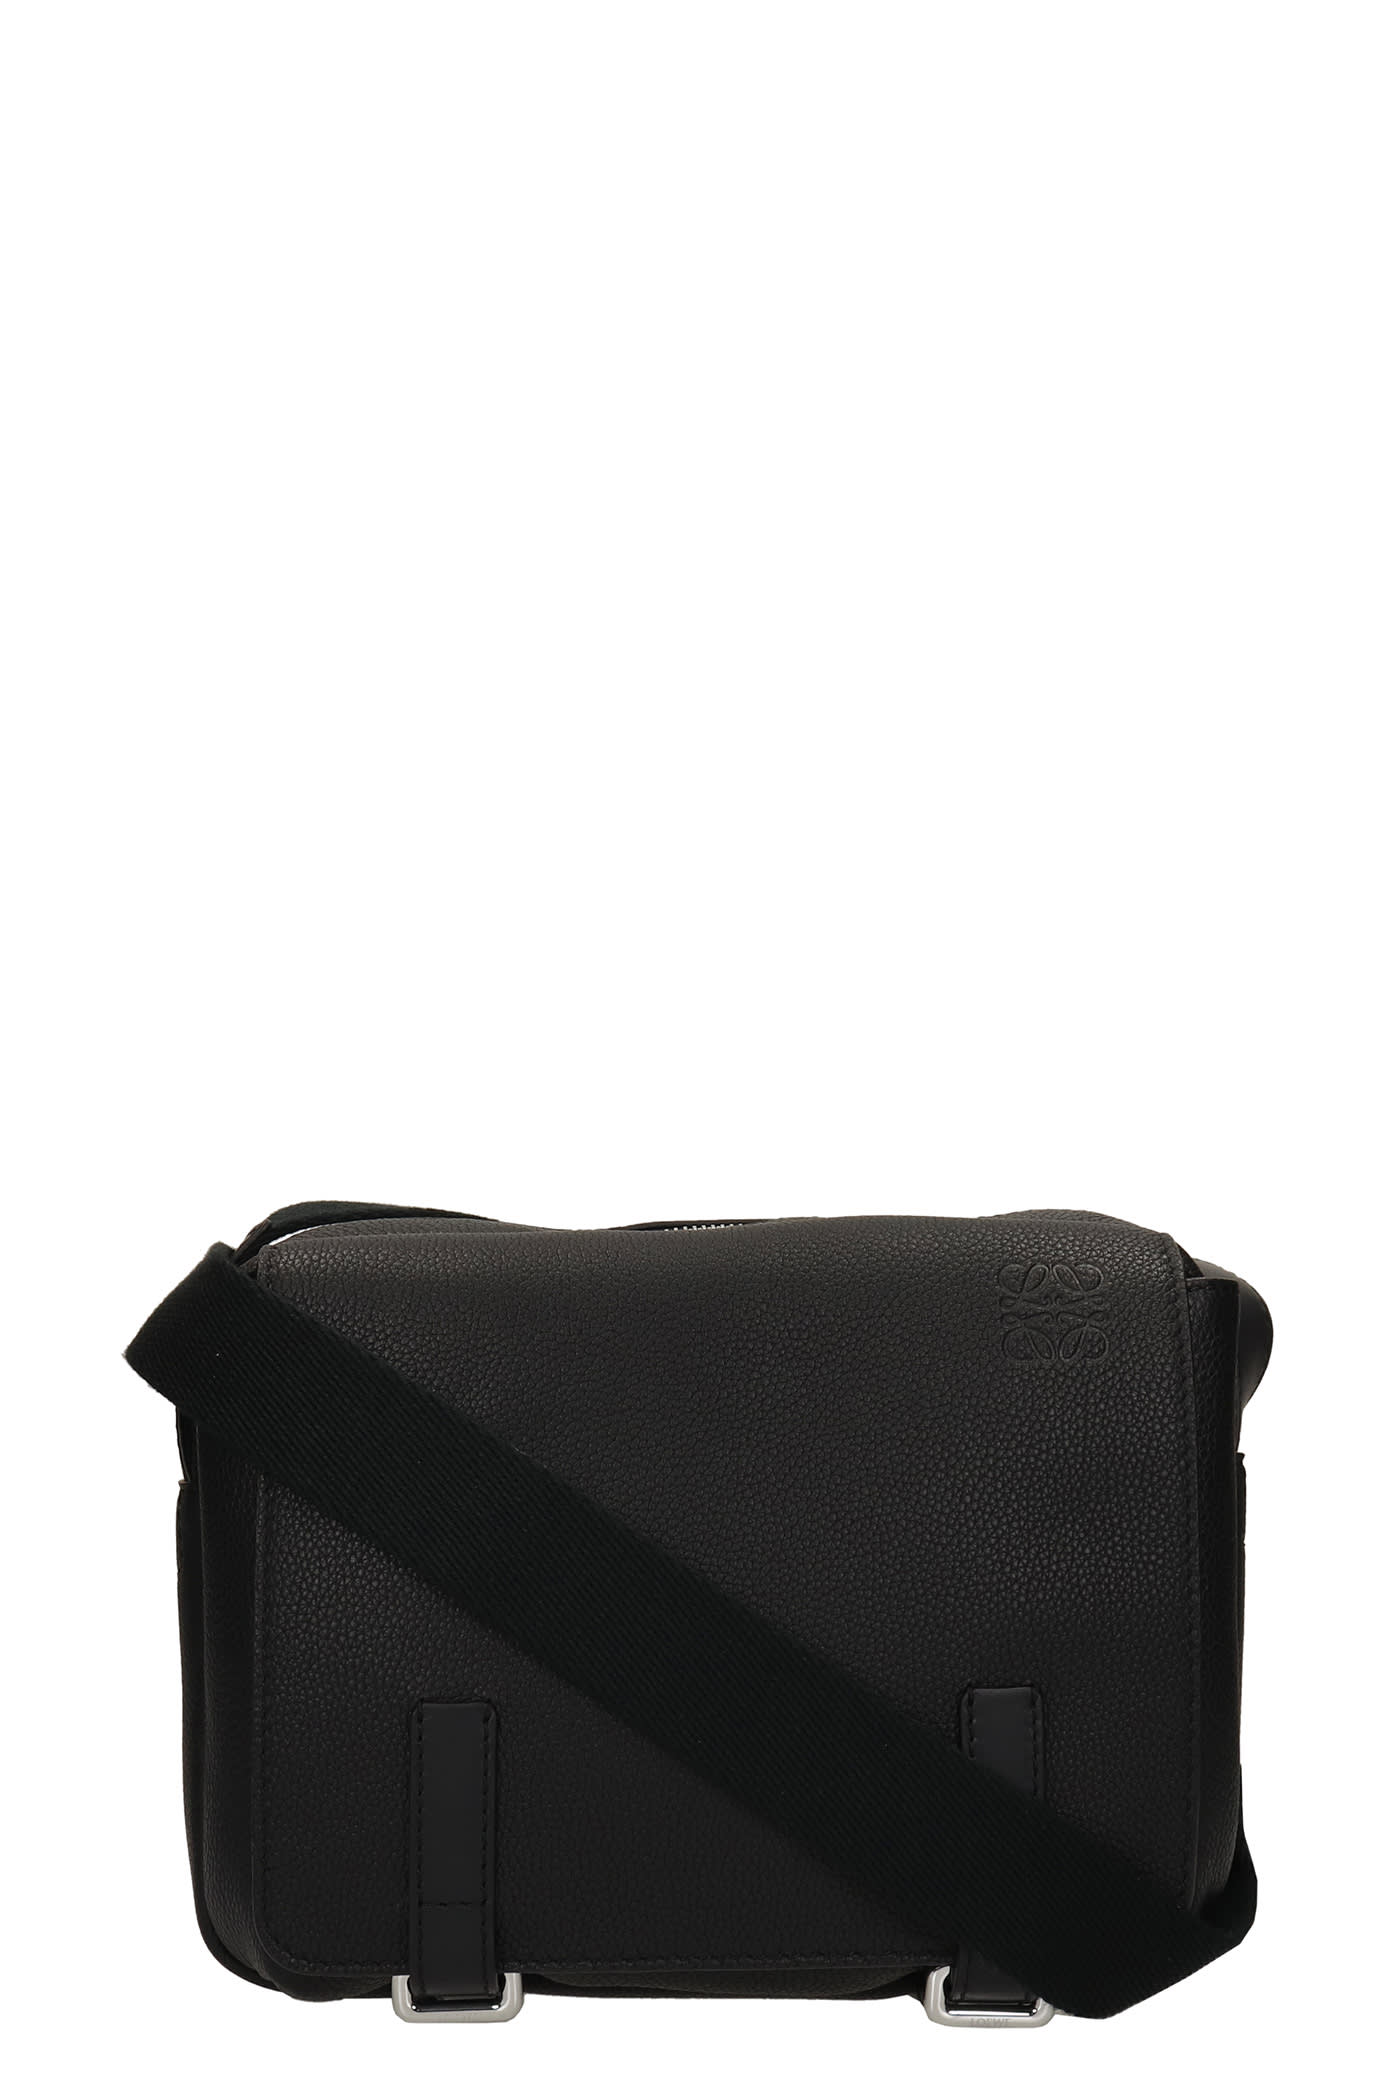 Loewe Shoulder Bag In Black Leather